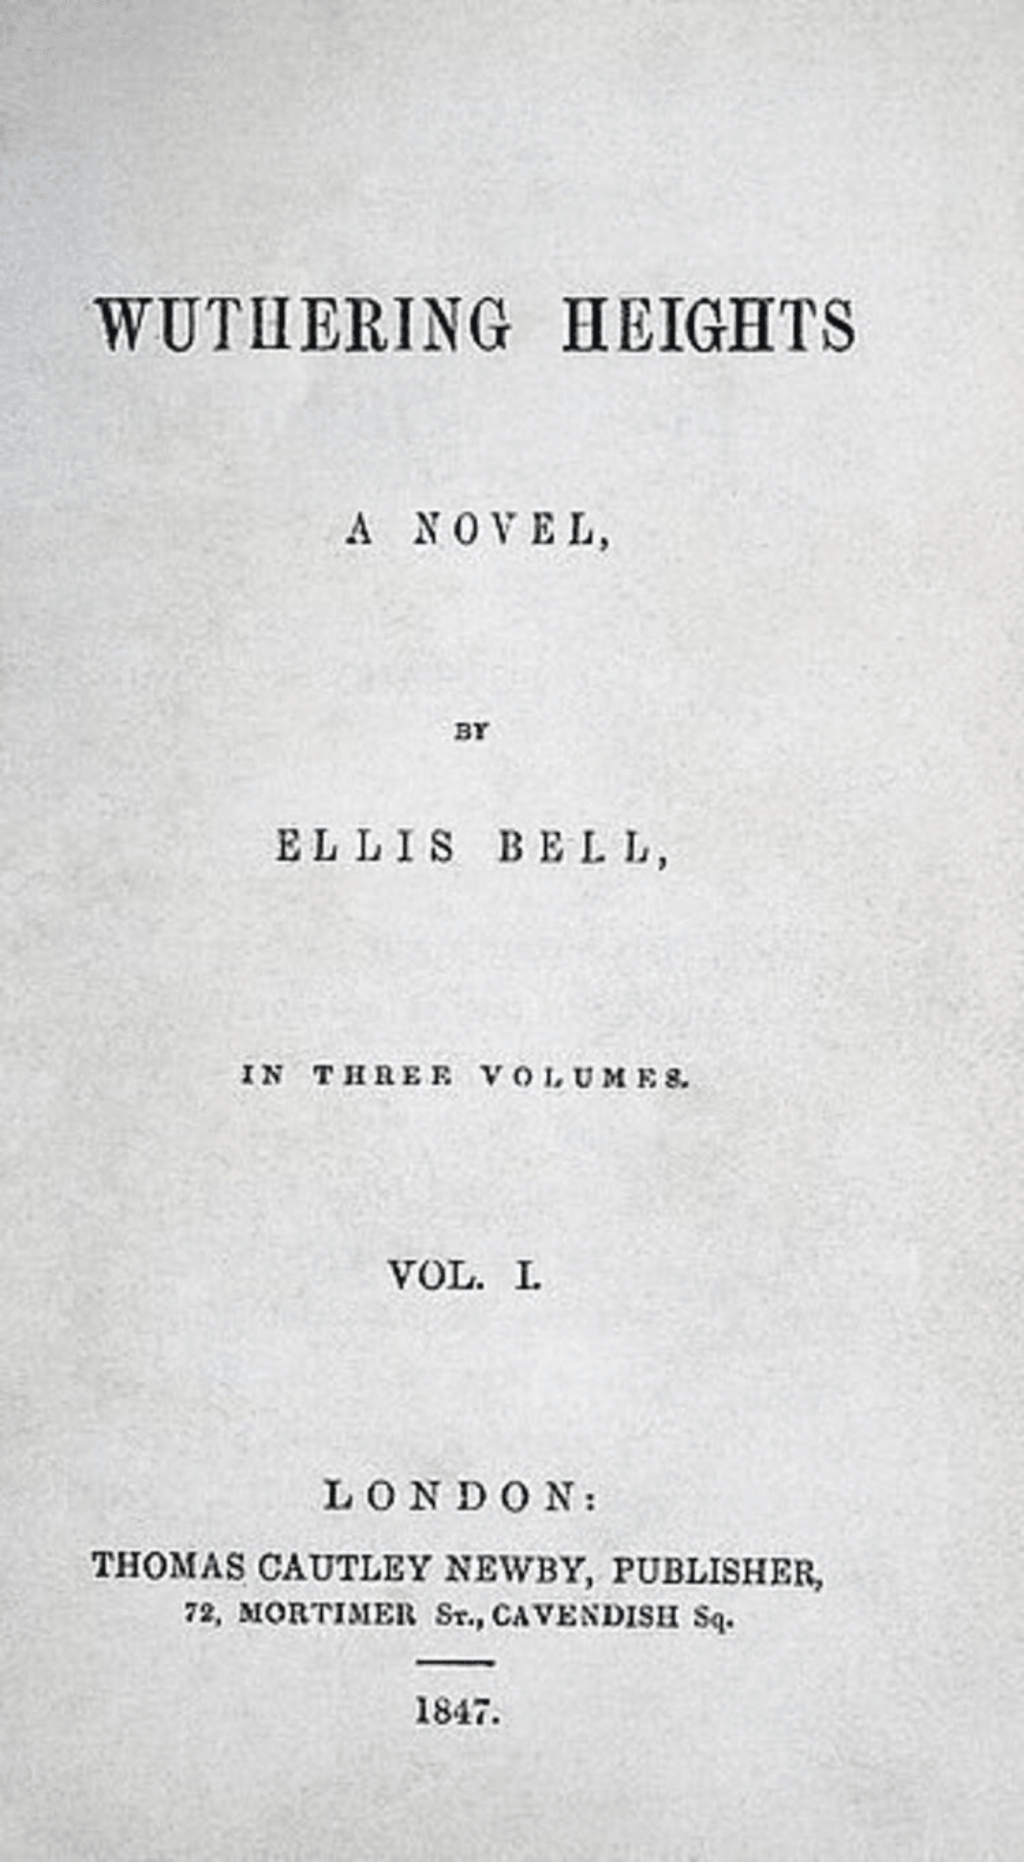 Portada de la edición original de "Cumbres Borrascosas" firmada por Emily Brontë con el seudónimo de Ellis Bell. 